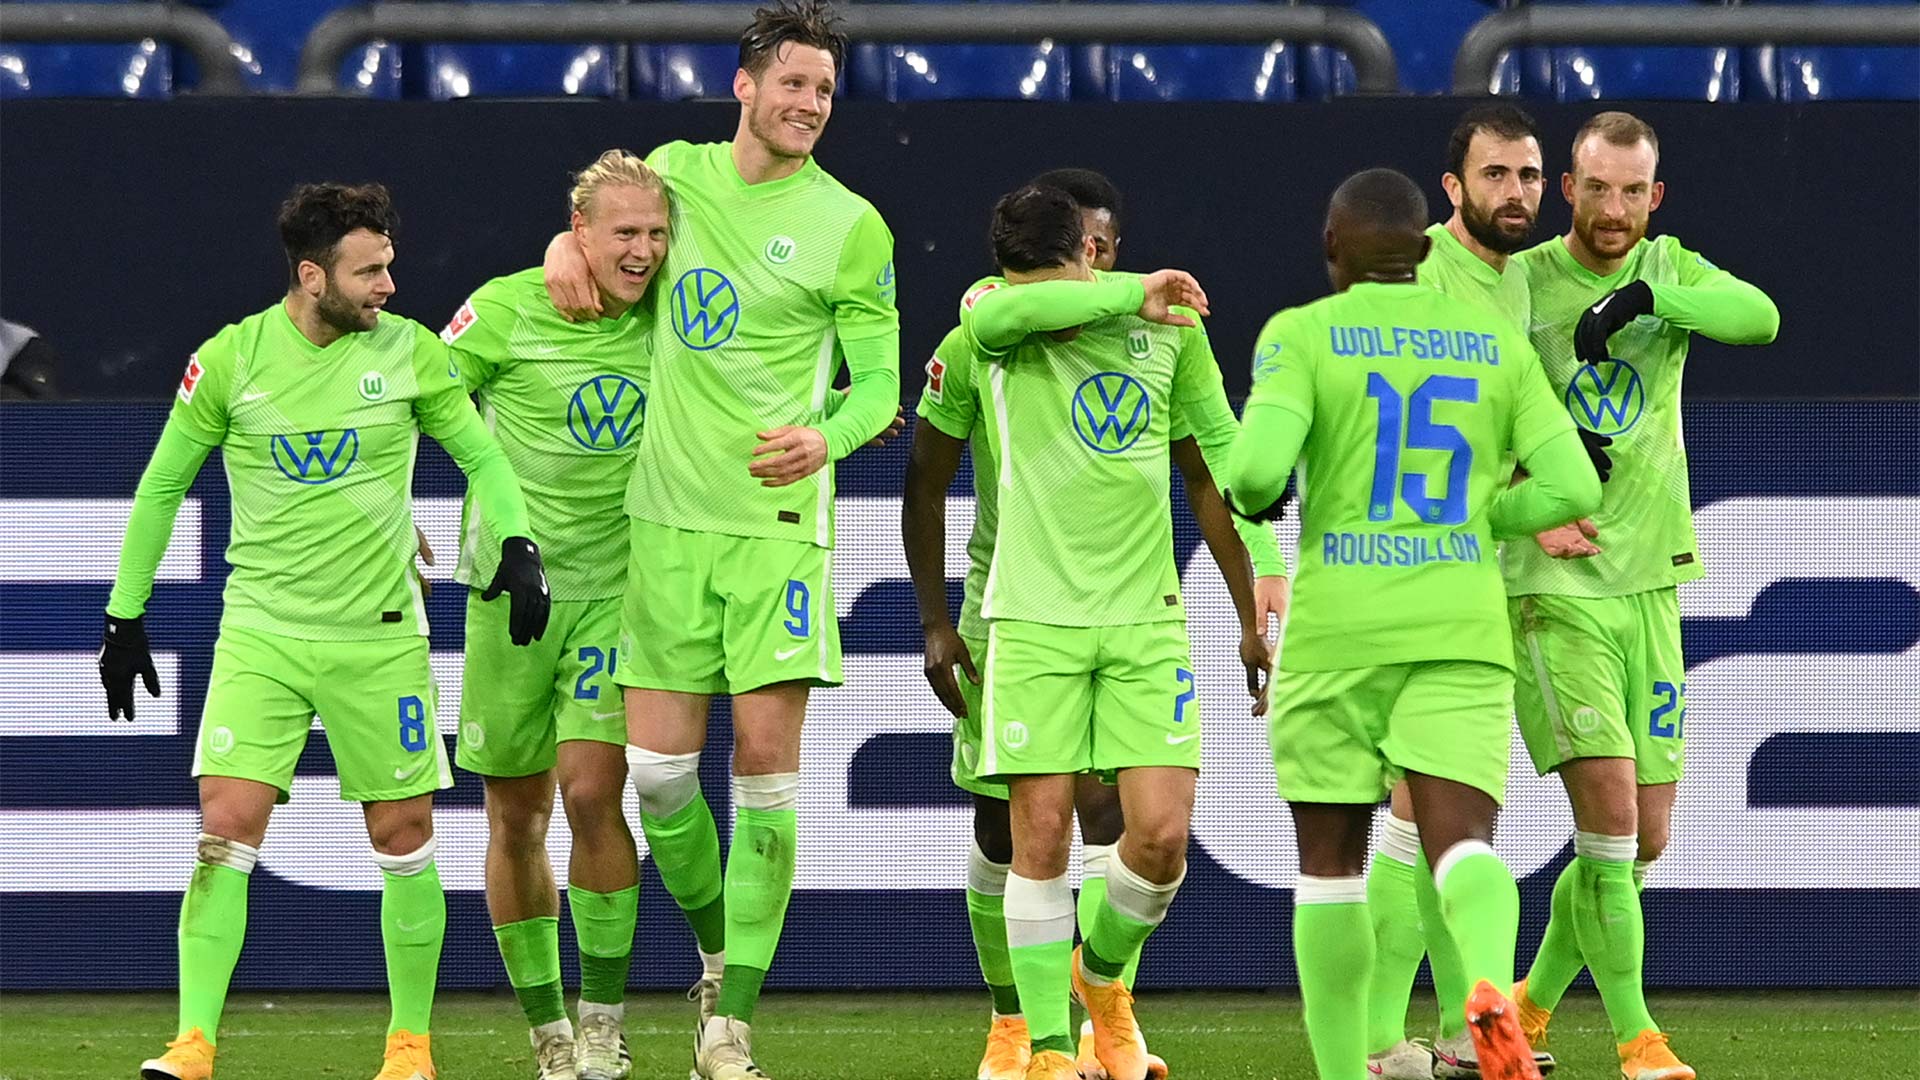 Die Wölfe laufen gemeinsam jubelnd und gratulierend über den Platz nach der Führung gegen Schalke.